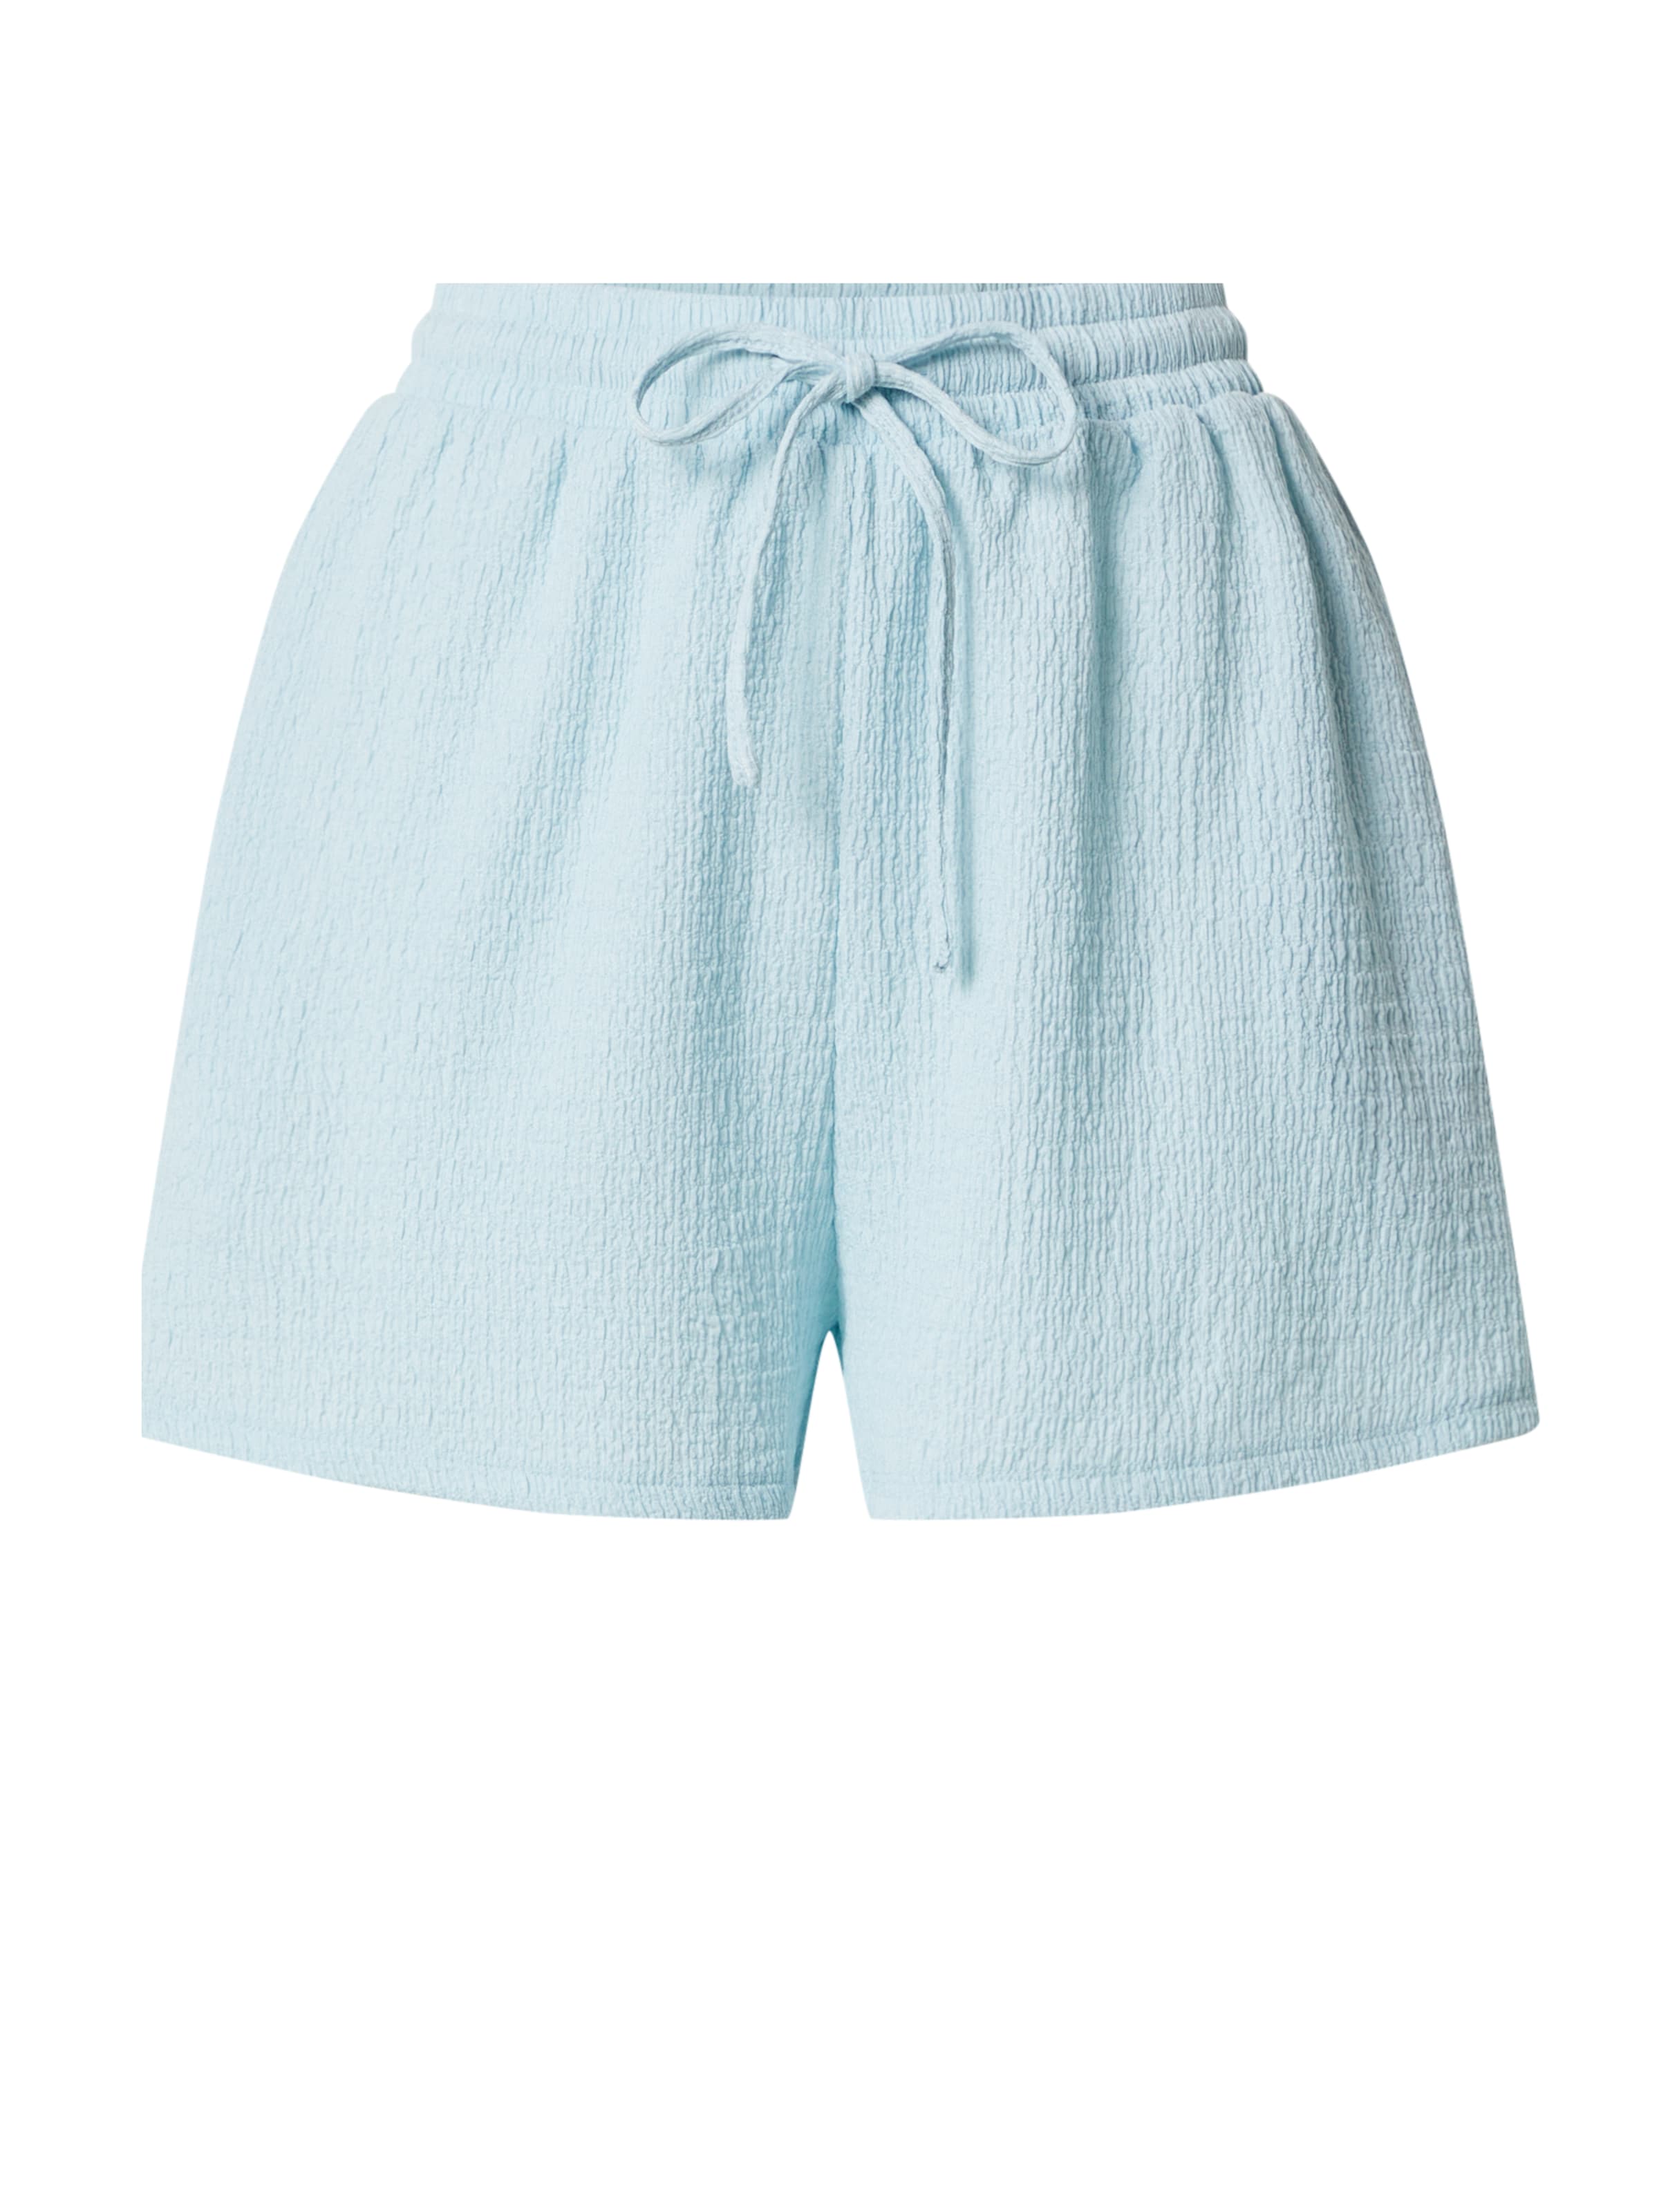 retroféte SHORTS HAISLEY in Blau Damen Bekleidung Kurze Hosen Mini Shorts 